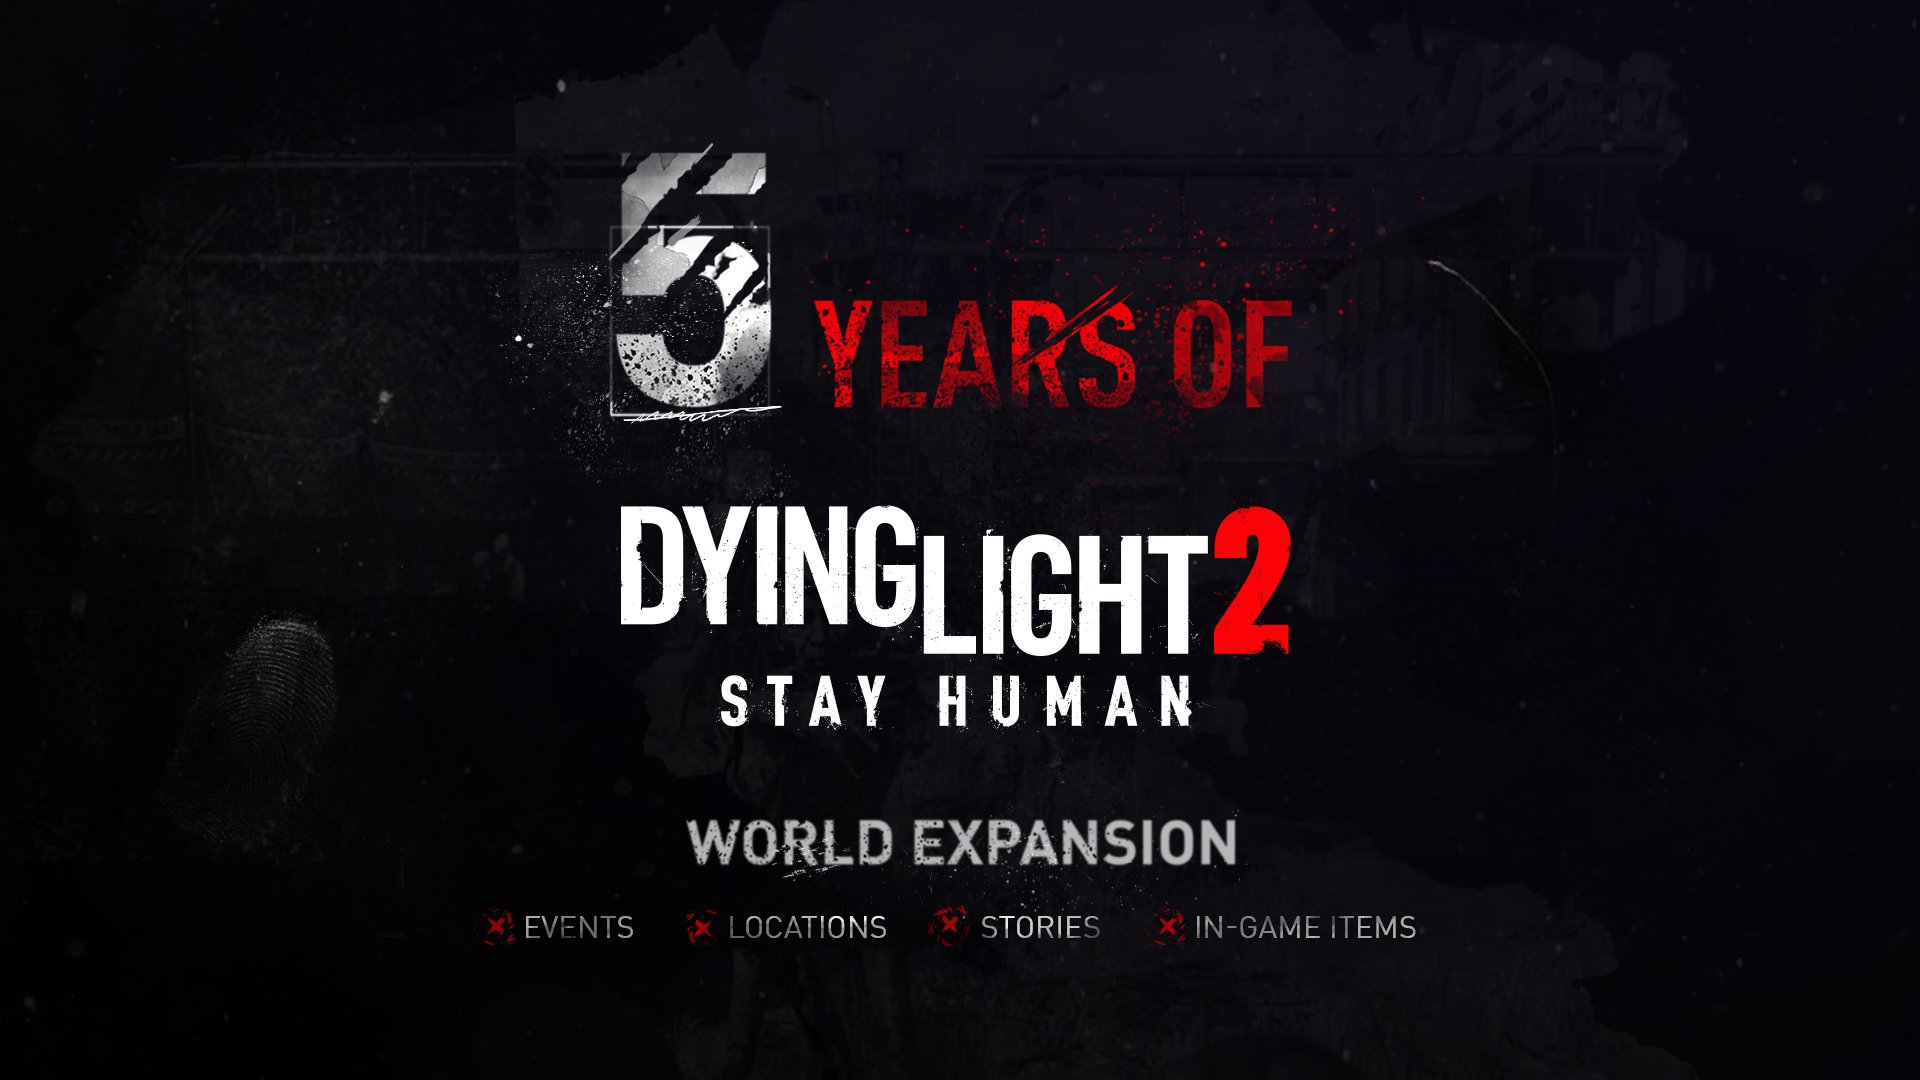 Dying Light 2 Akan Mendapatkan Konten Baru Selama 5 Tahun Kedepan